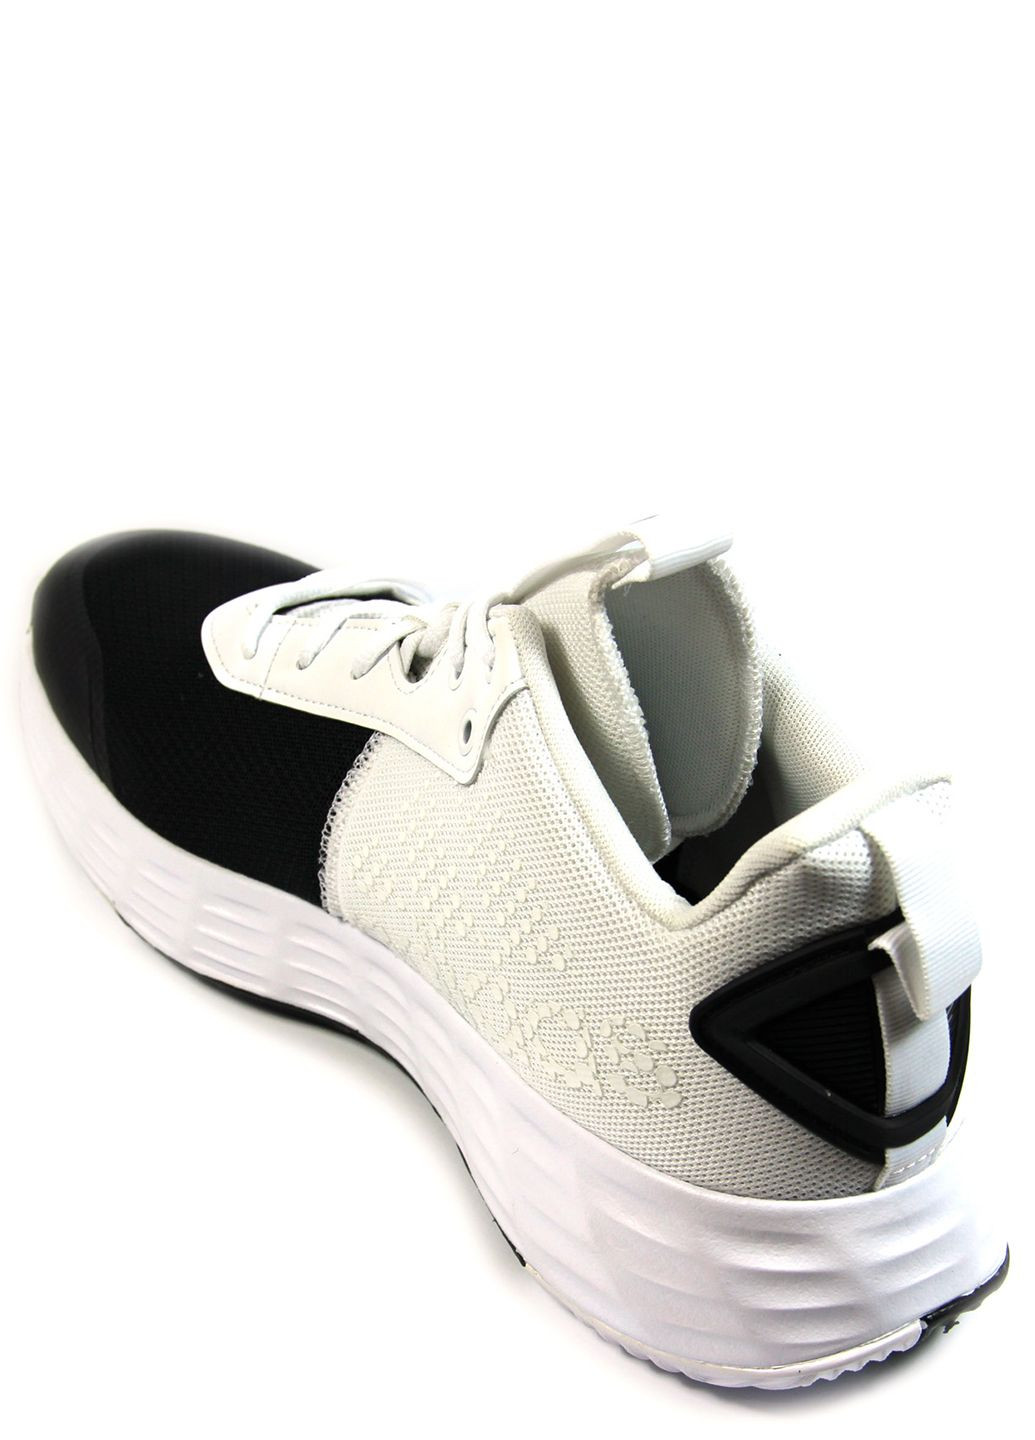 Черно-белые демисезонные мужские кроссовки ownthegame if2689 adidas